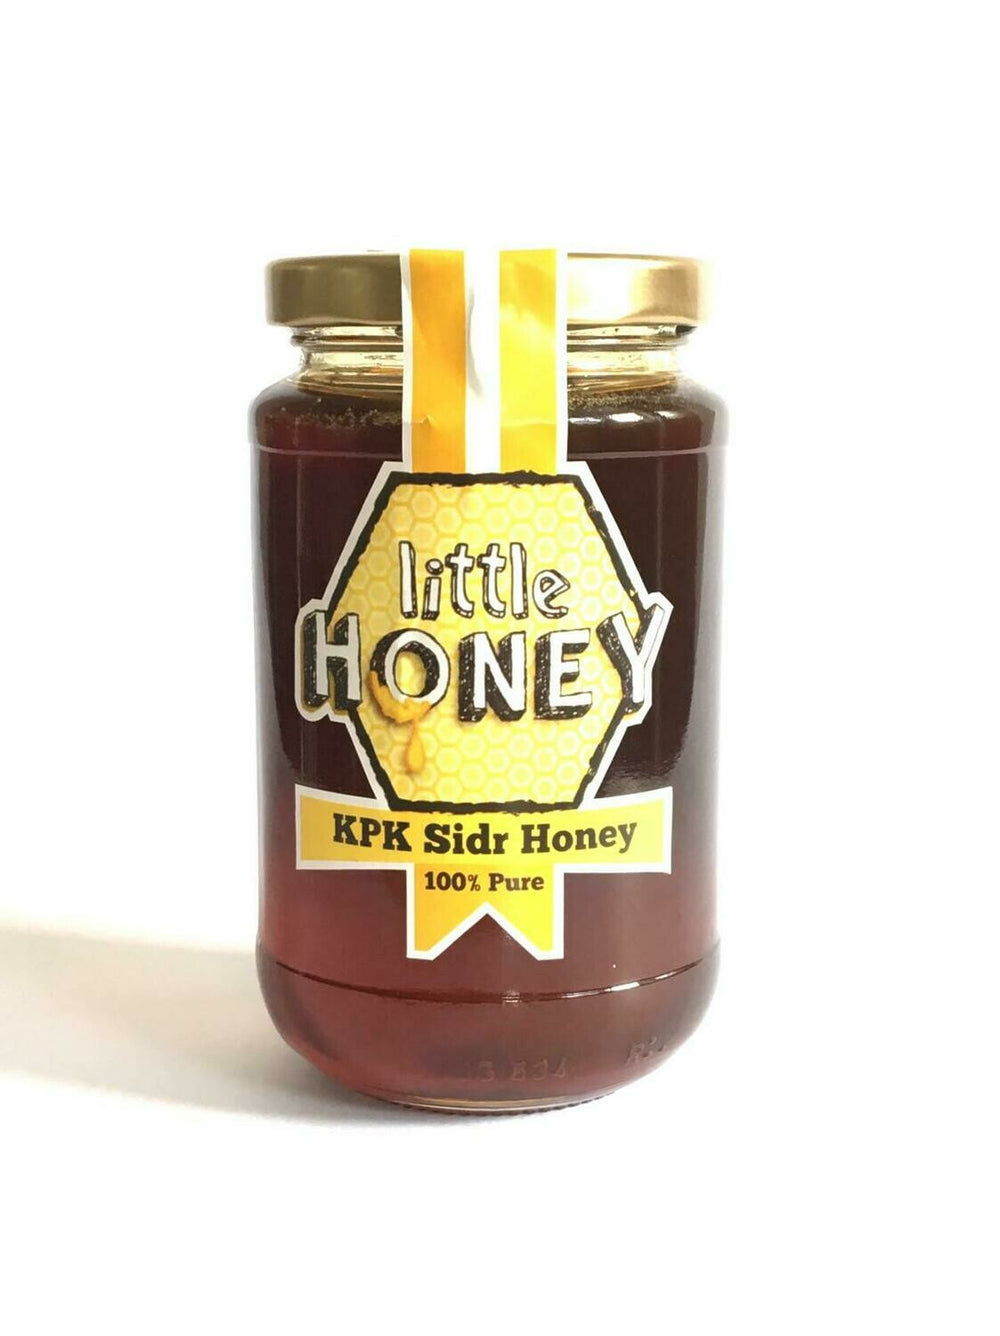 450g KPK (Kashmiri) Sidr Honey Jar